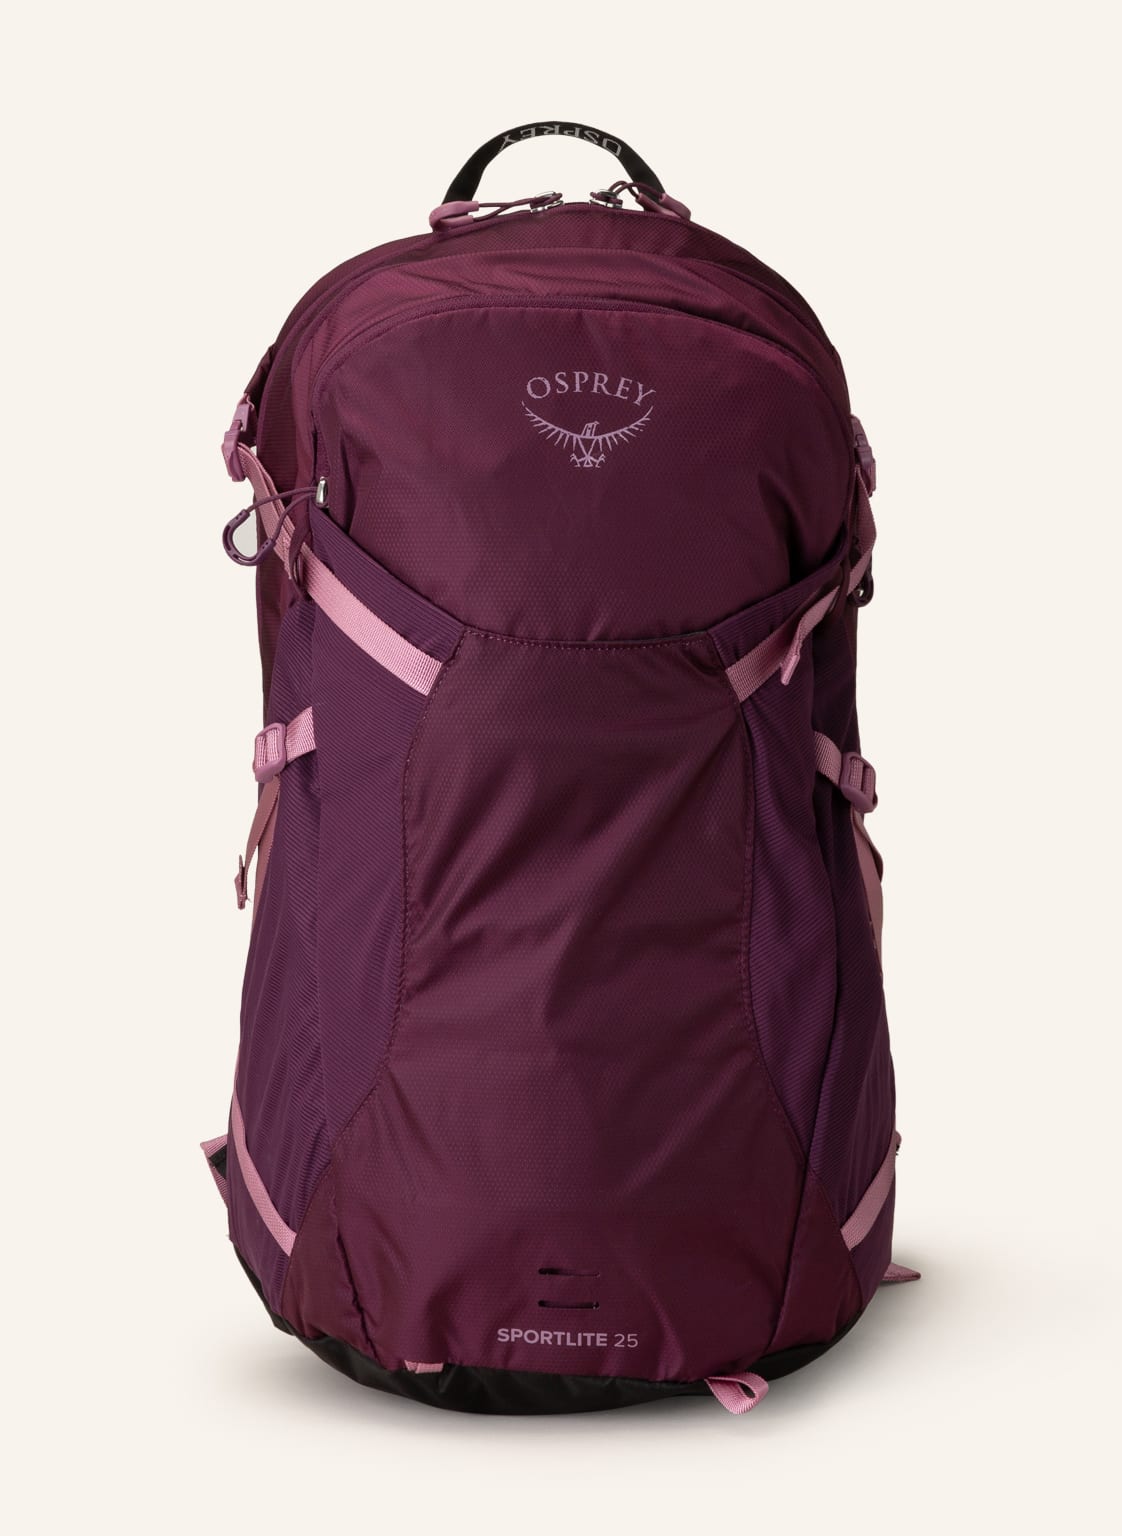 Osprey Plecak Sportlite 25 L violett